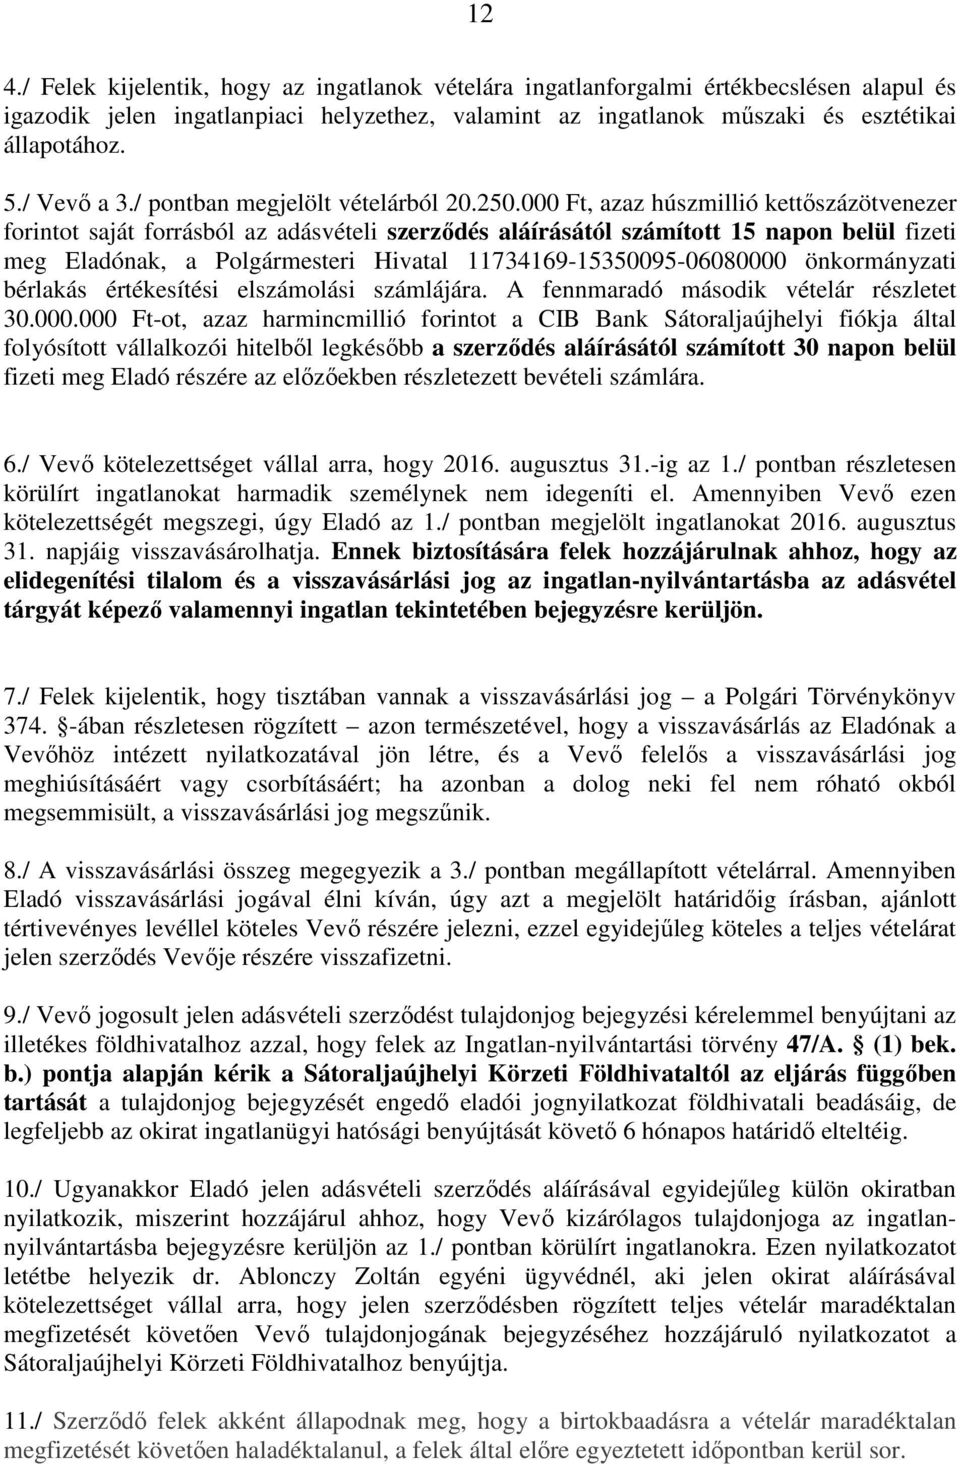 000 Ft, azaz húszmillió kettıszázötvenezer forintot saját forrásból az adásvételi szerzıdés aláírásától számított 15 napon belül fizeti meg Eladónak, a Polgármesteri Hivatal